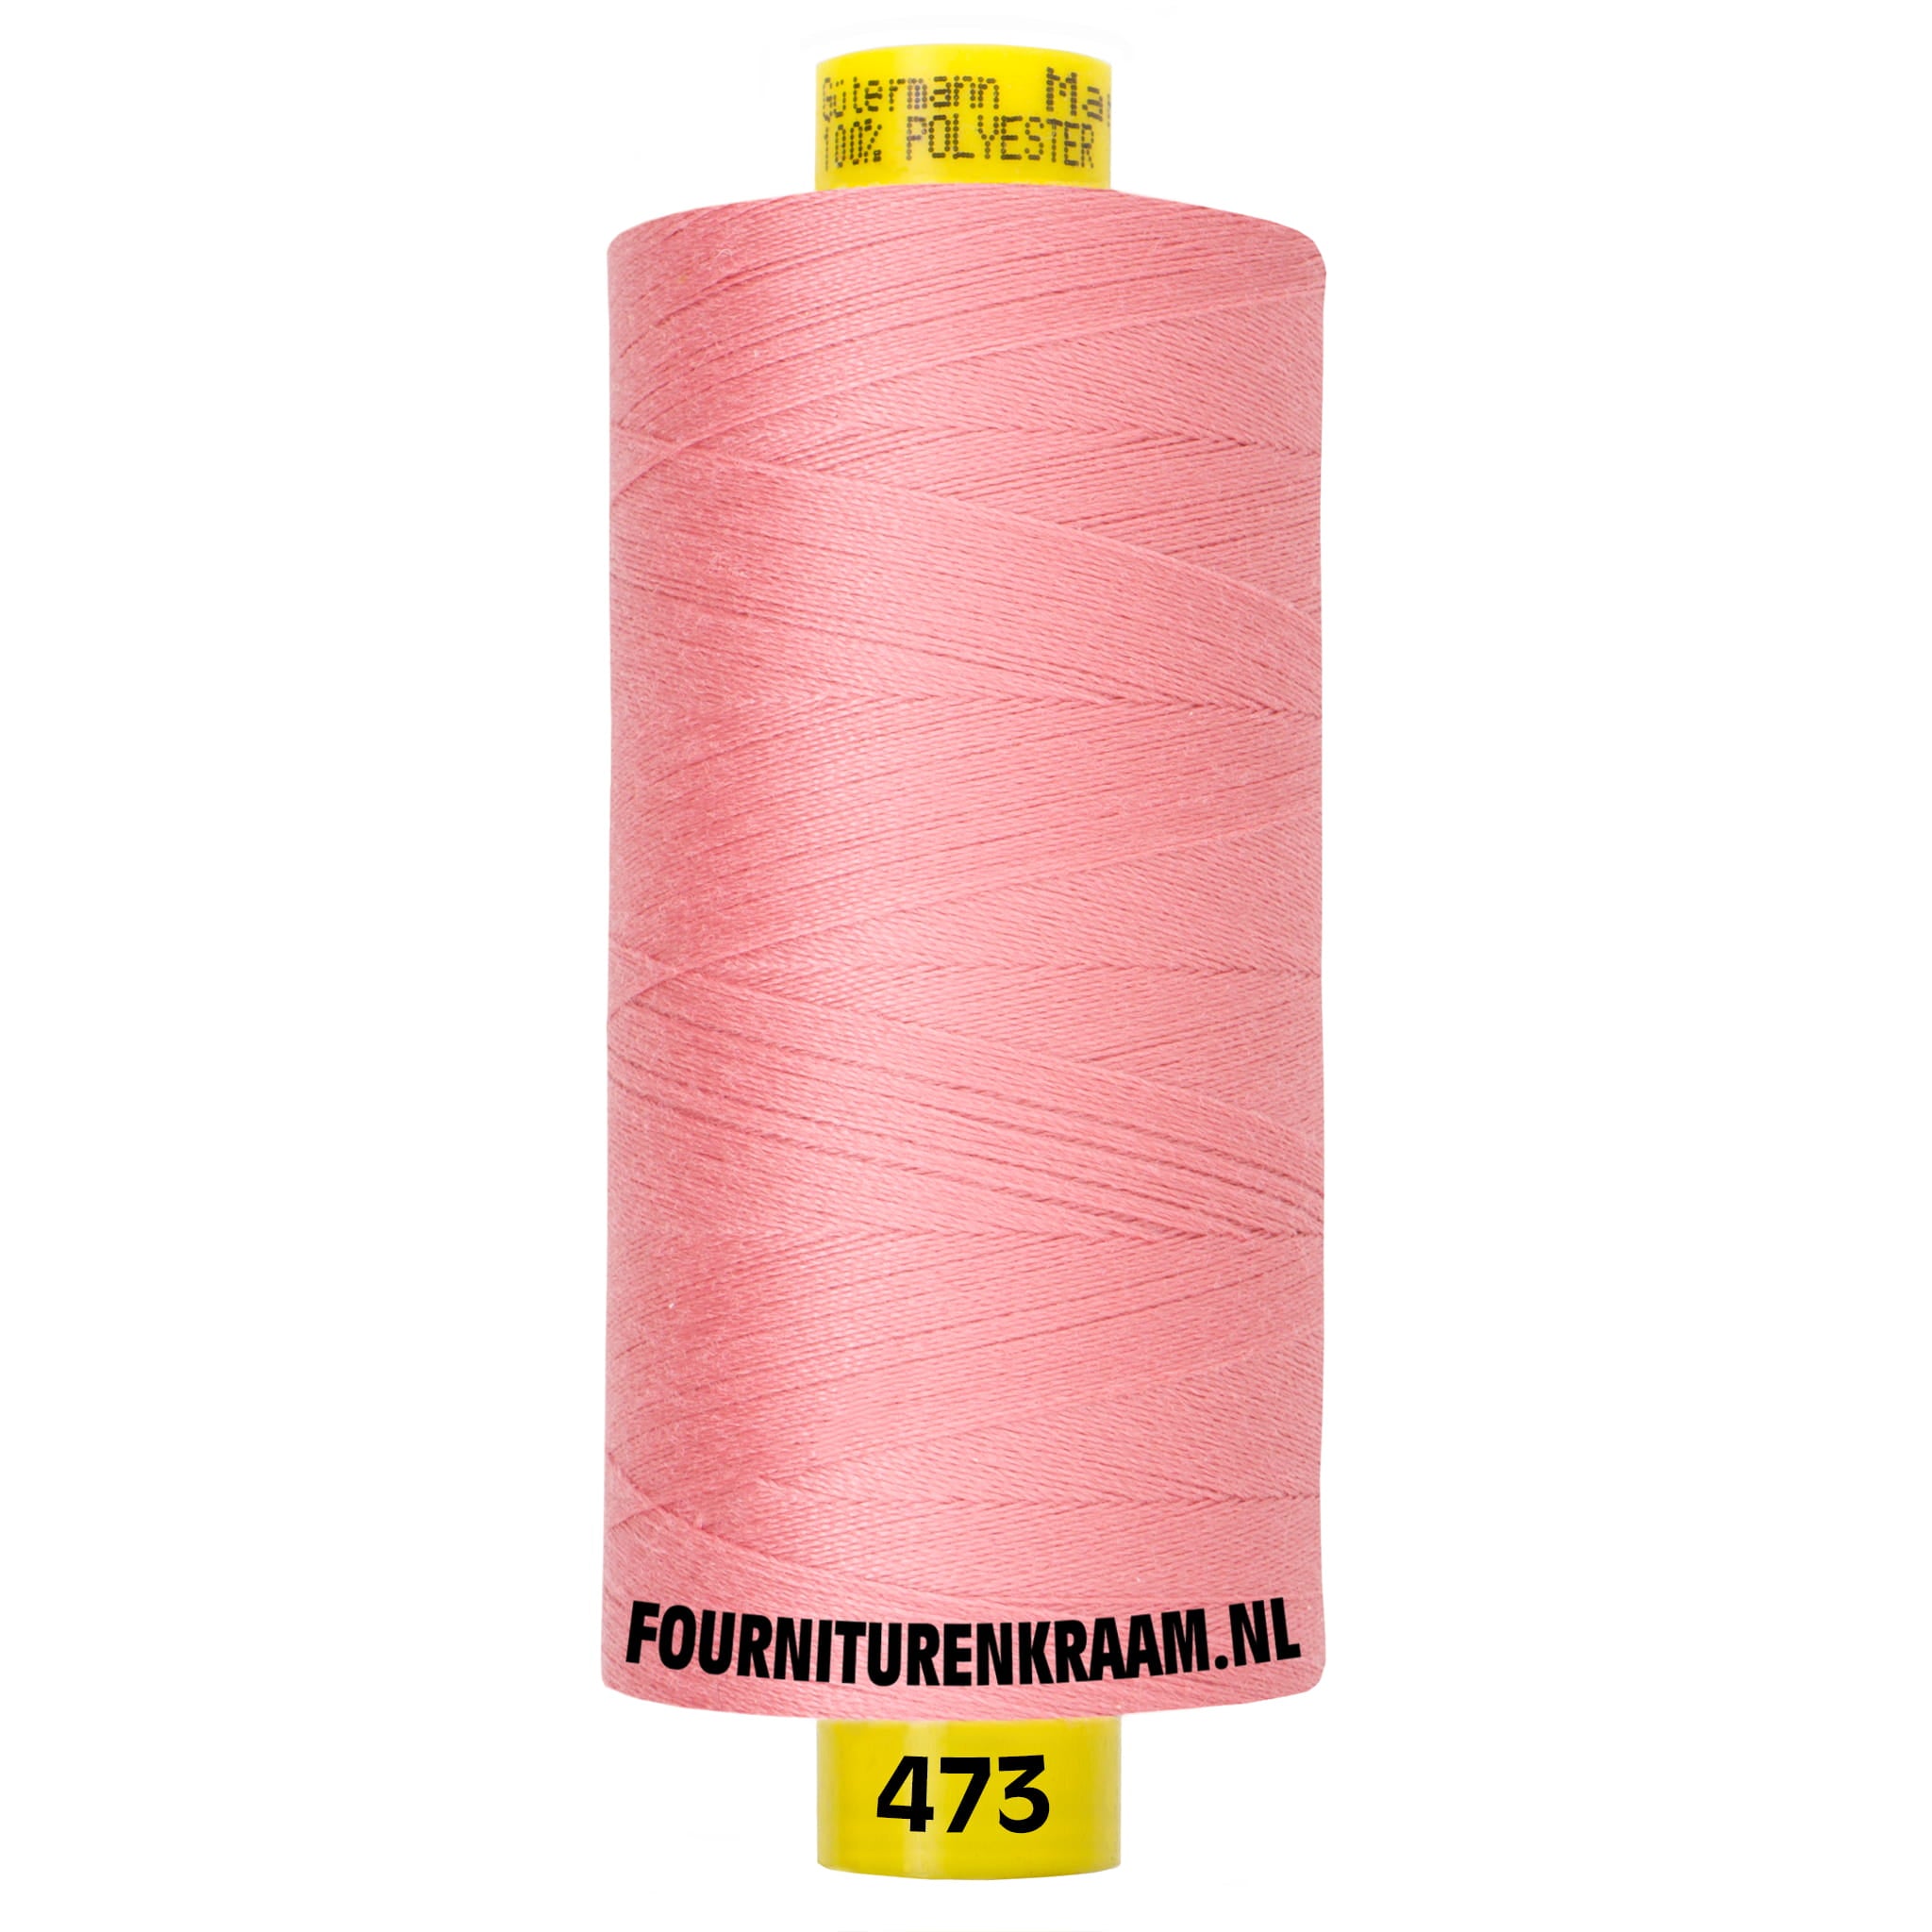 Gütermann Mara naaigaren 1000m - 473 oud roze - Garen - GMA-1000-473 - 4008015236304 - Fourniturenkraam.nl